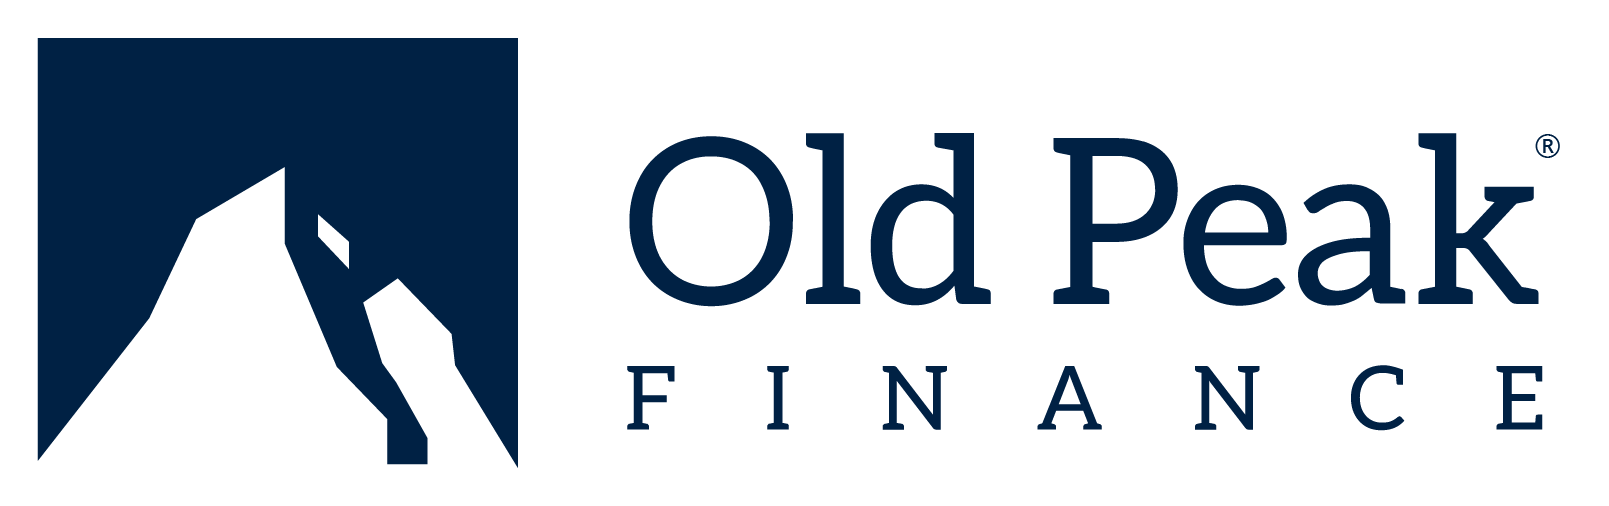 Old Peak Finance